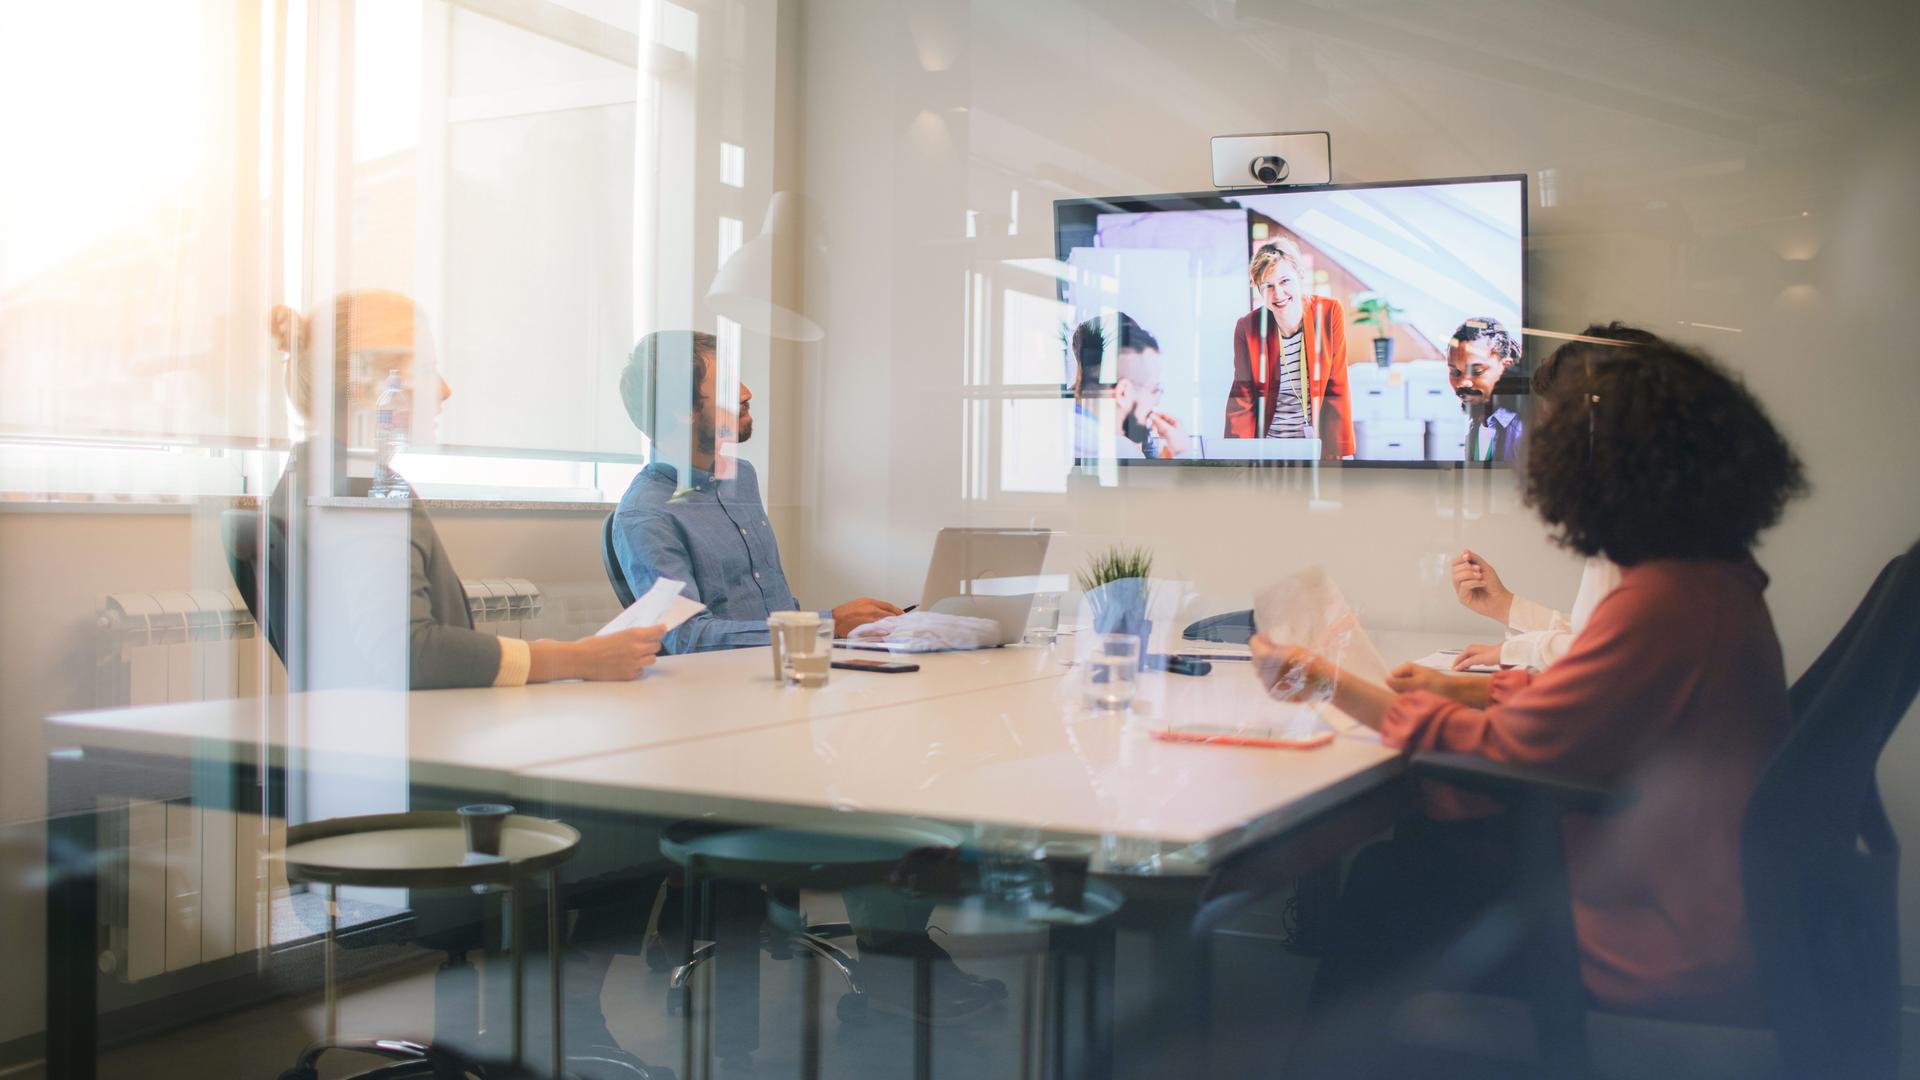 Blick durch Glasscheiben in einen Meetingraum mit Videoprojektion. In dem Meetingraum sitzen vier Personen.